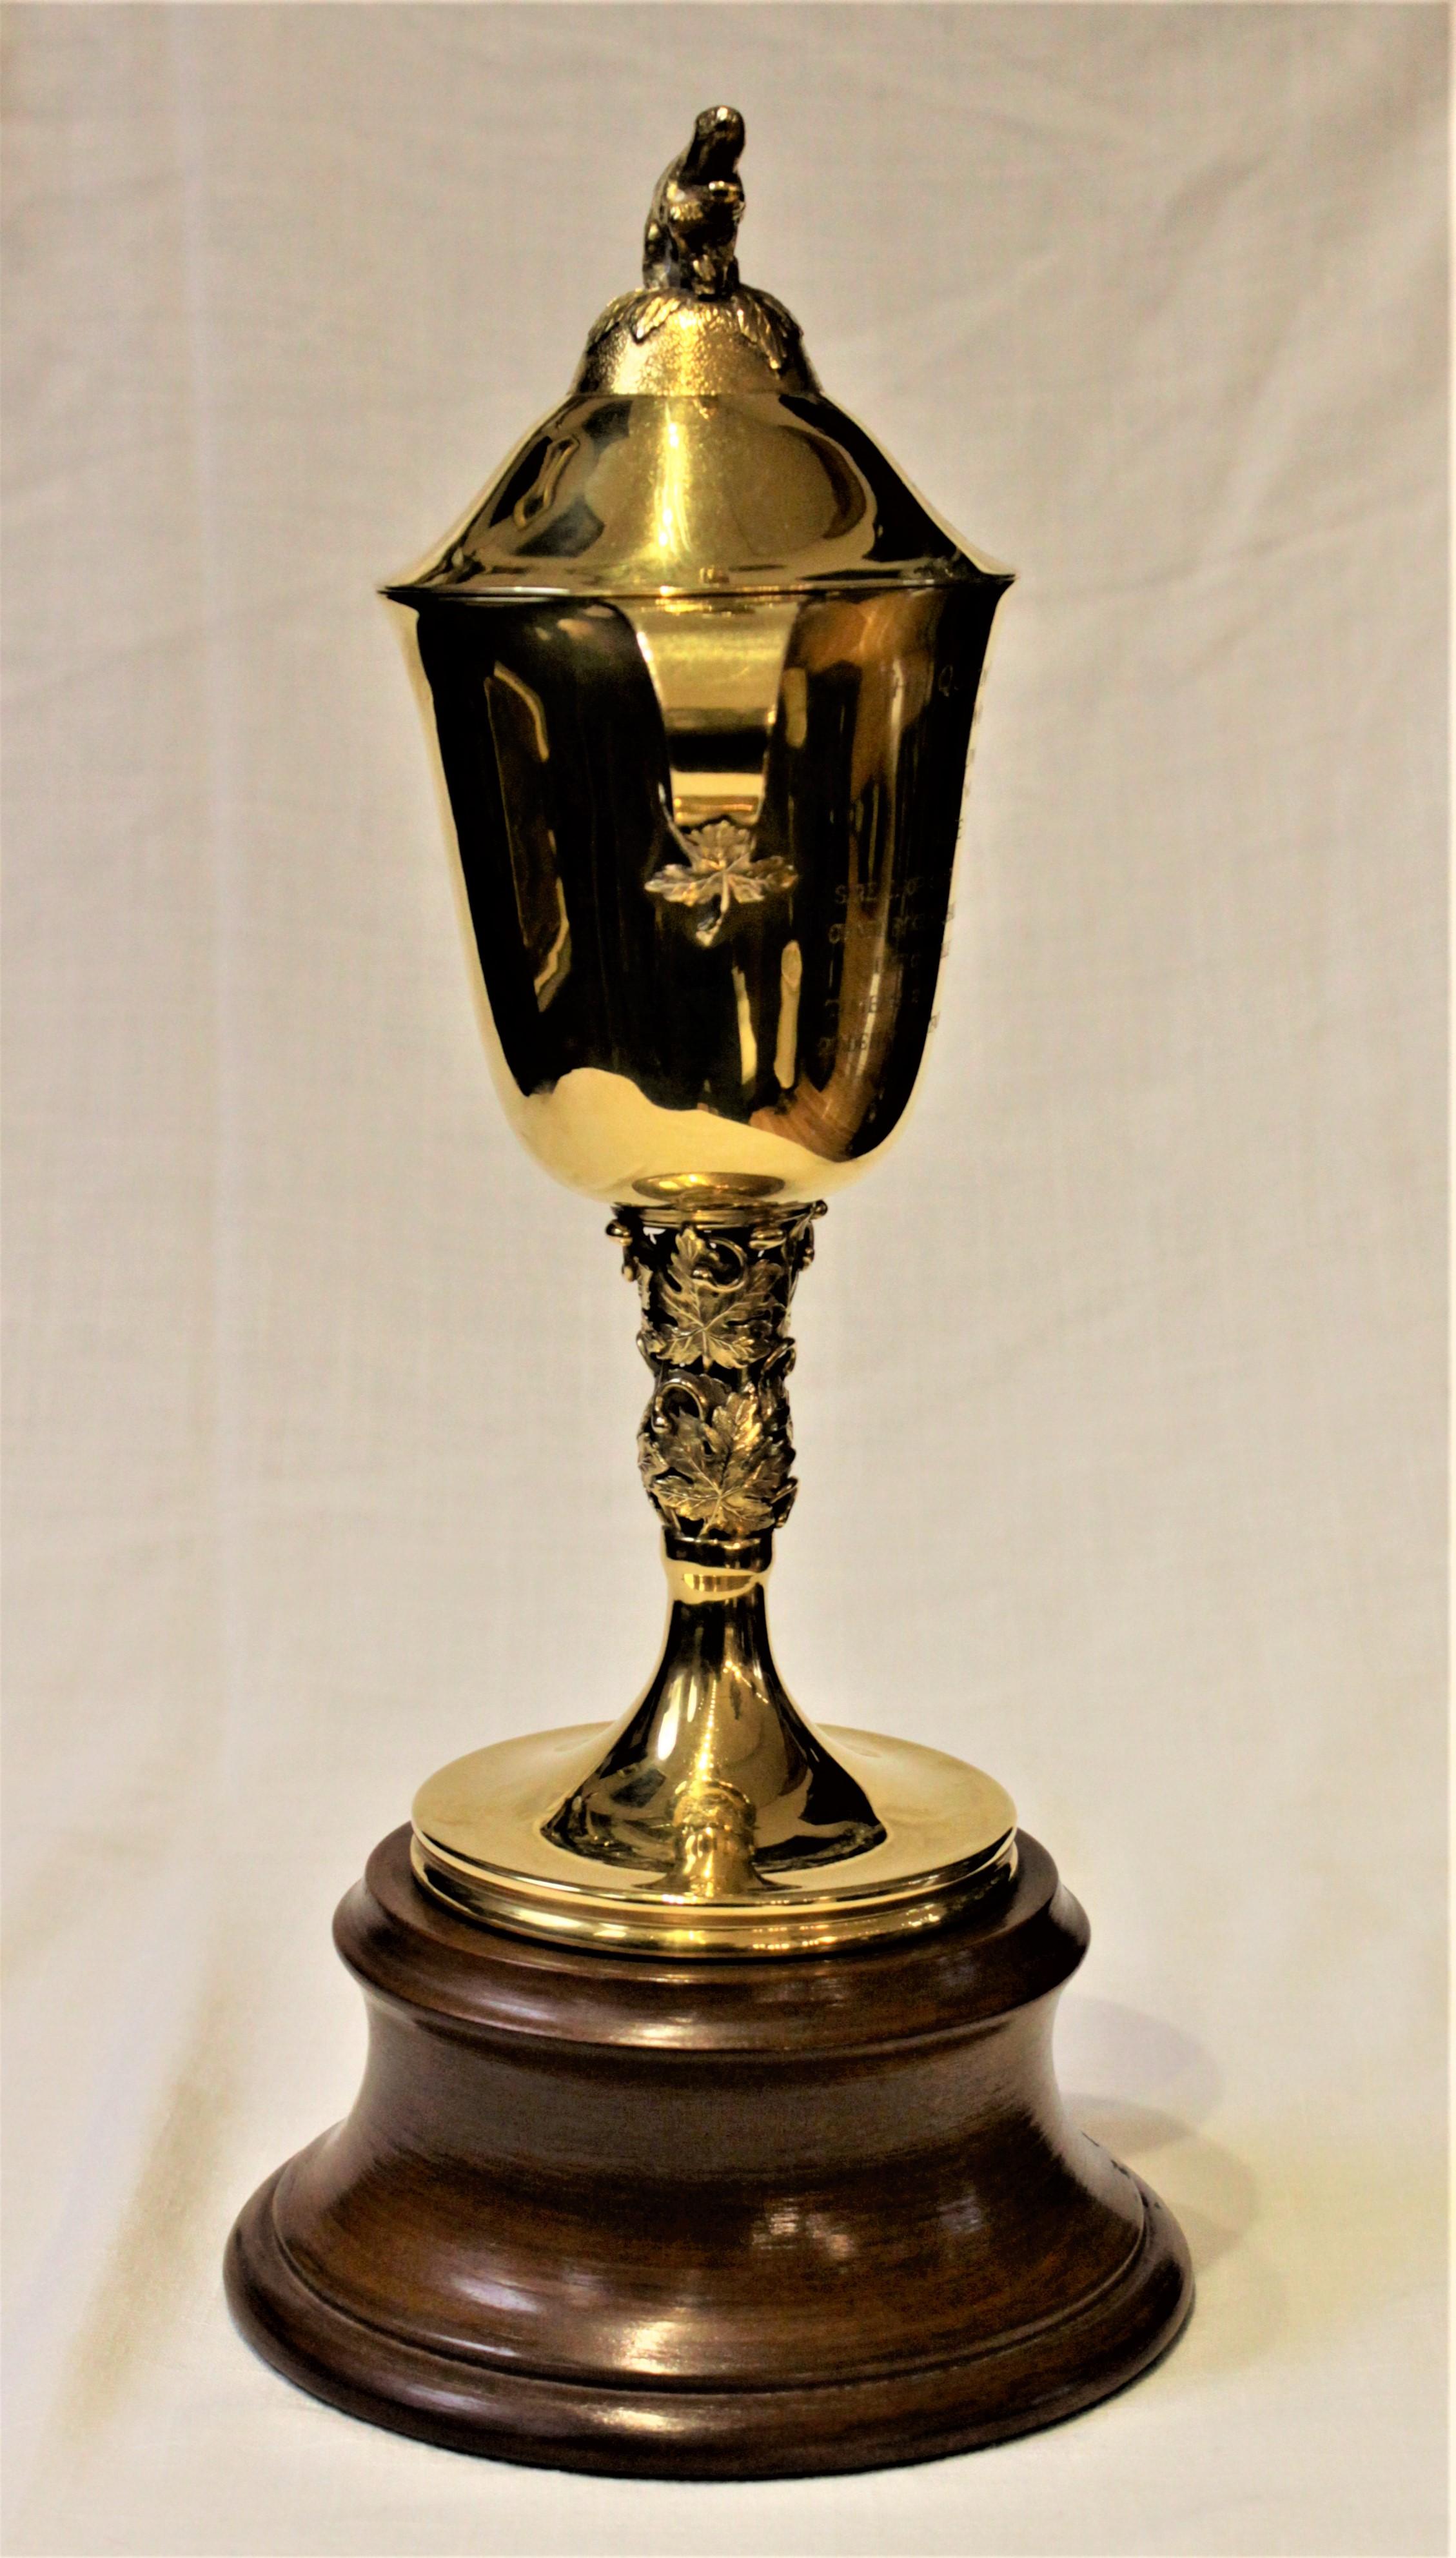 Ce trophée de course hippique Queen's Plate Stakes en or jaune massif de 14 carats a été réalisé par le célèbre orfèvre canadien d'origine danoise, Carl Poul Petersen, pour Mappins de Montréal à l'occasion de la course de 1961 à Woodbine. Le trophée